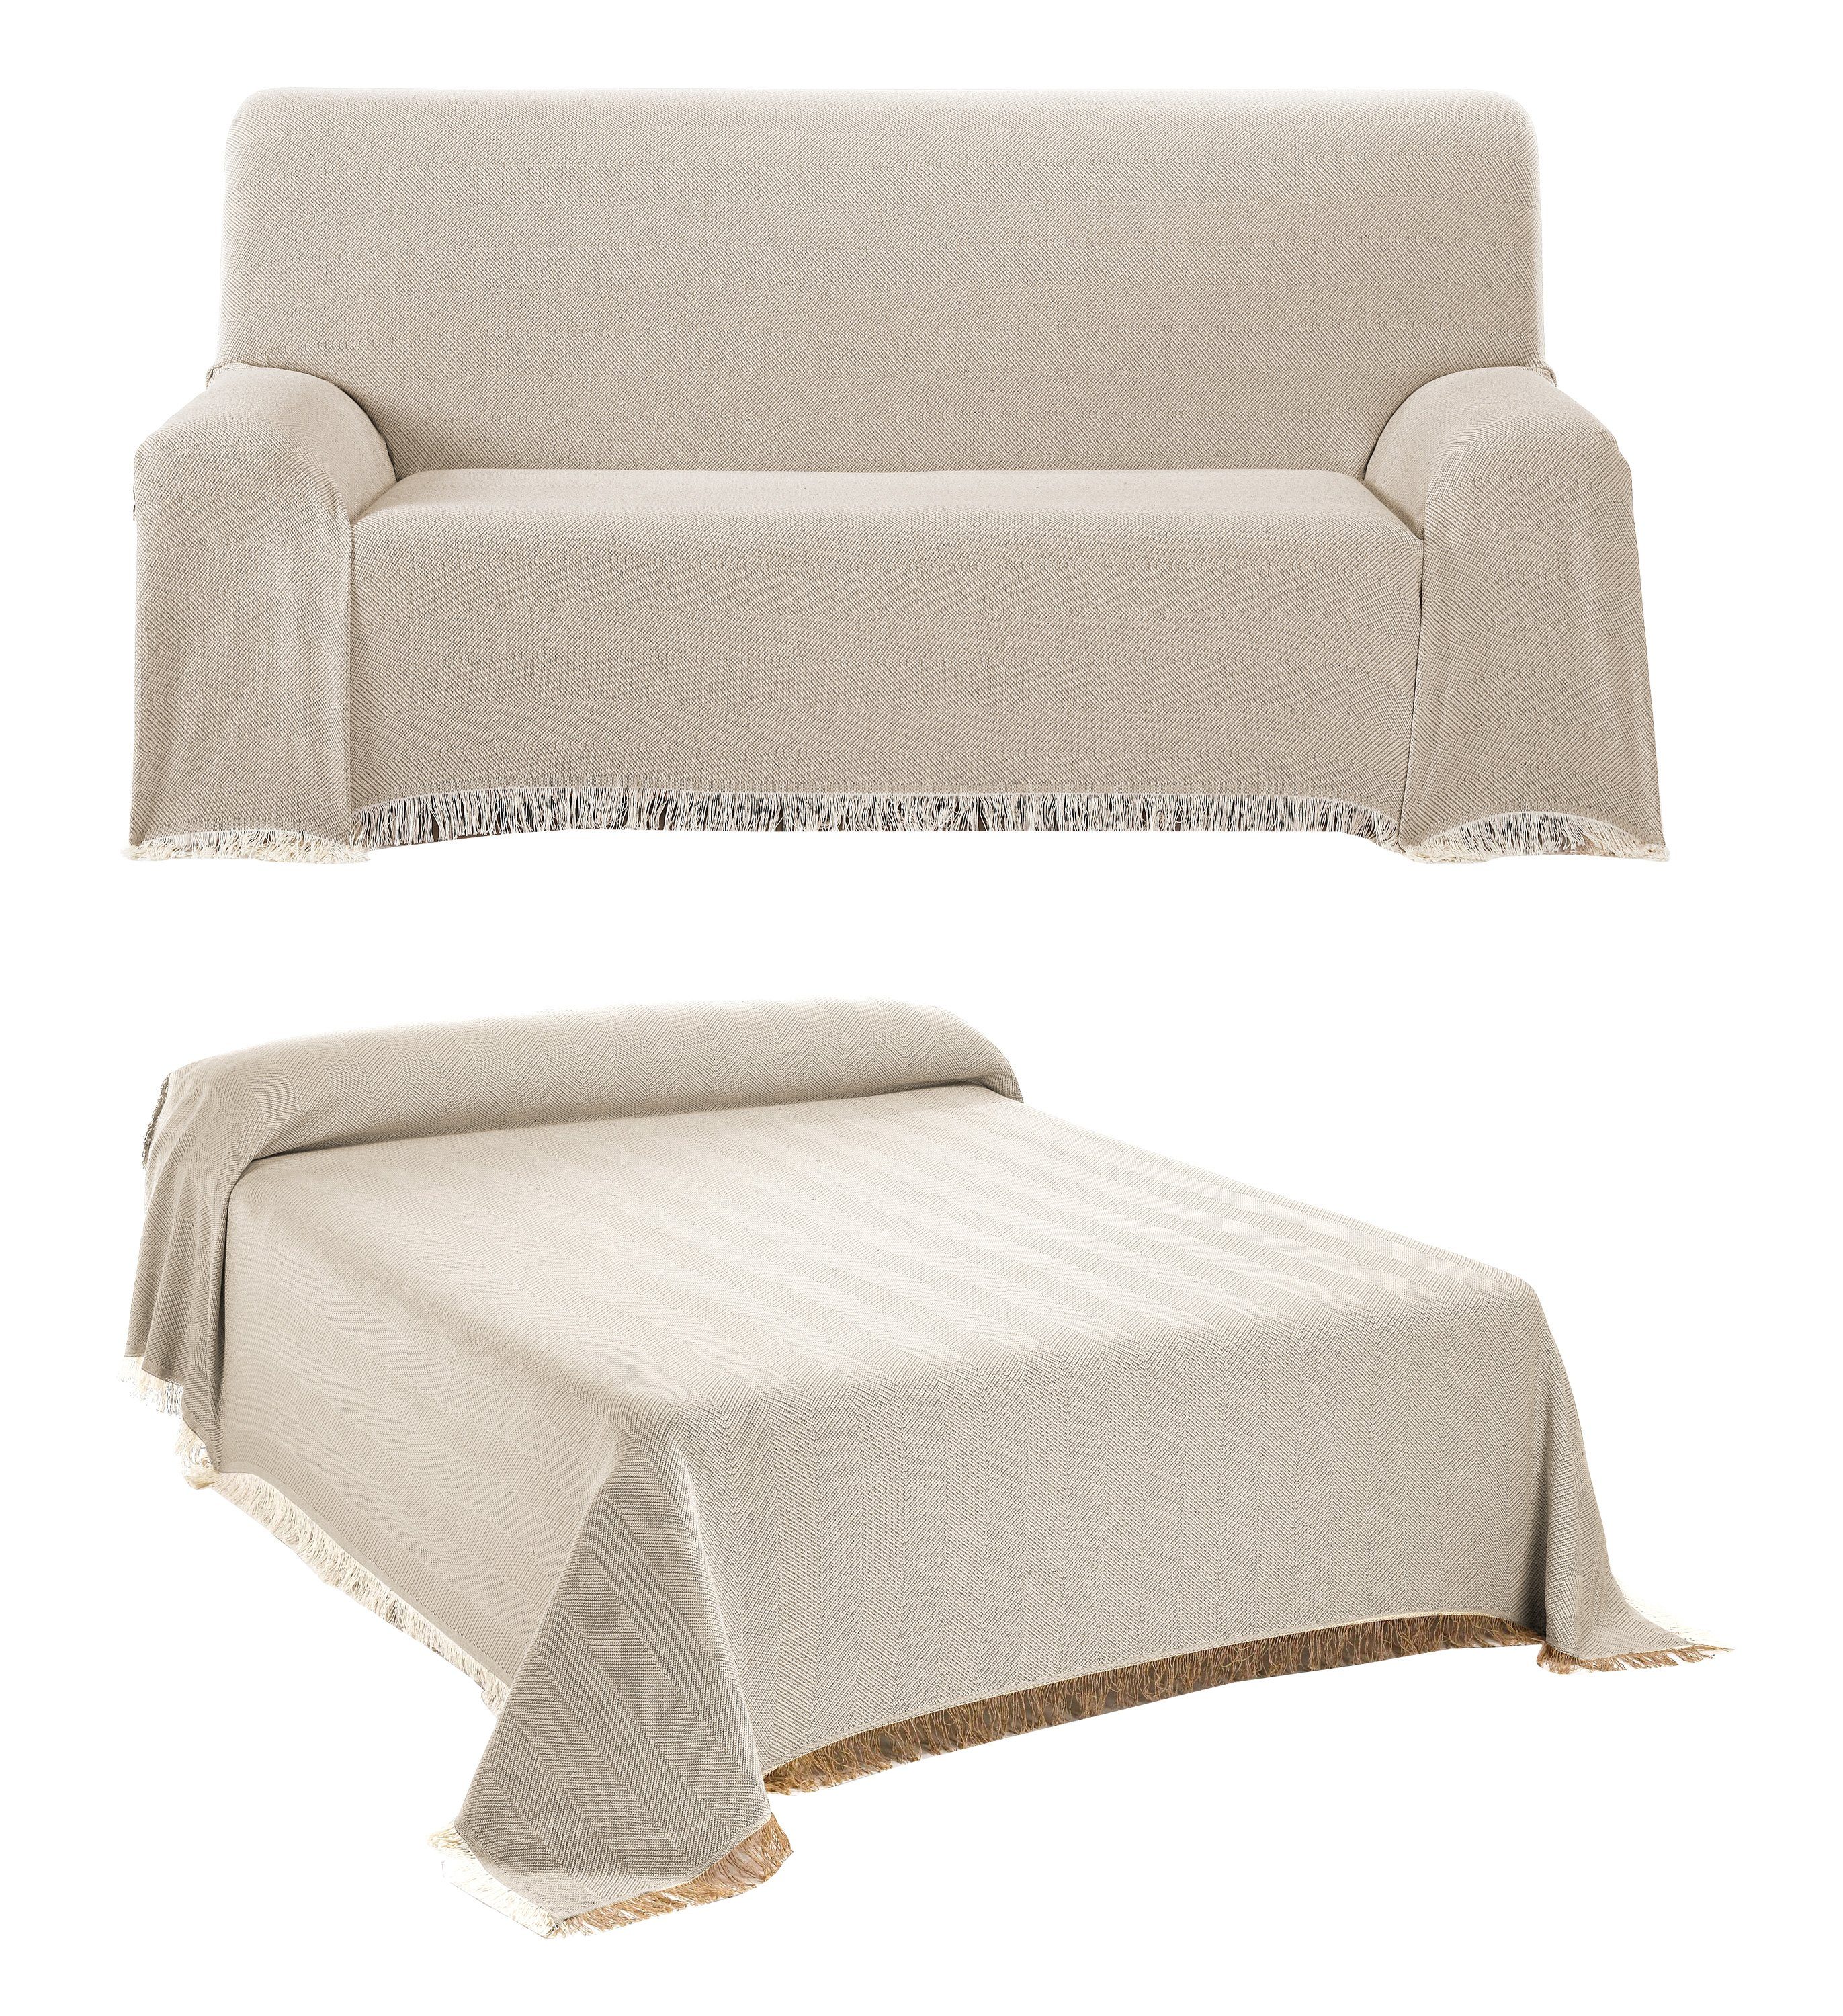 Tagesdecke Tagesdecke - Wohnzimmer Decke aus Baumwolle in 180x260 oder  230x260 - Praktischer Überwurf als Sofadecke oder Couchdecke - Hochwertiger  Bettüberwurf, Beautex